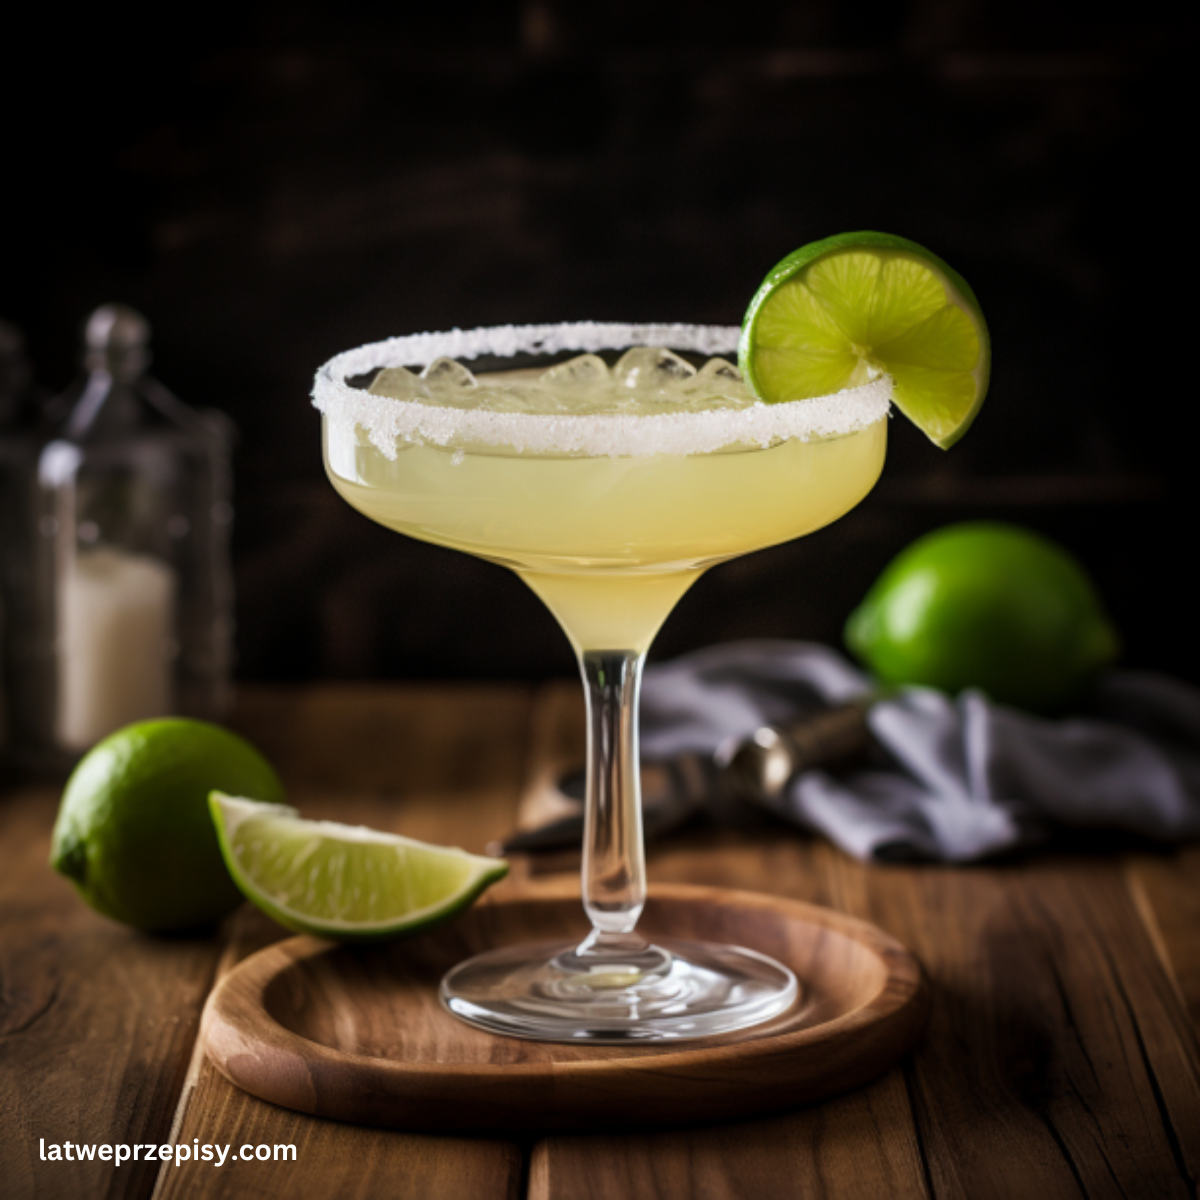 Drink Margarita podany w kieliszku z brzegiem z solą i świeżym plasterkiem limonki.